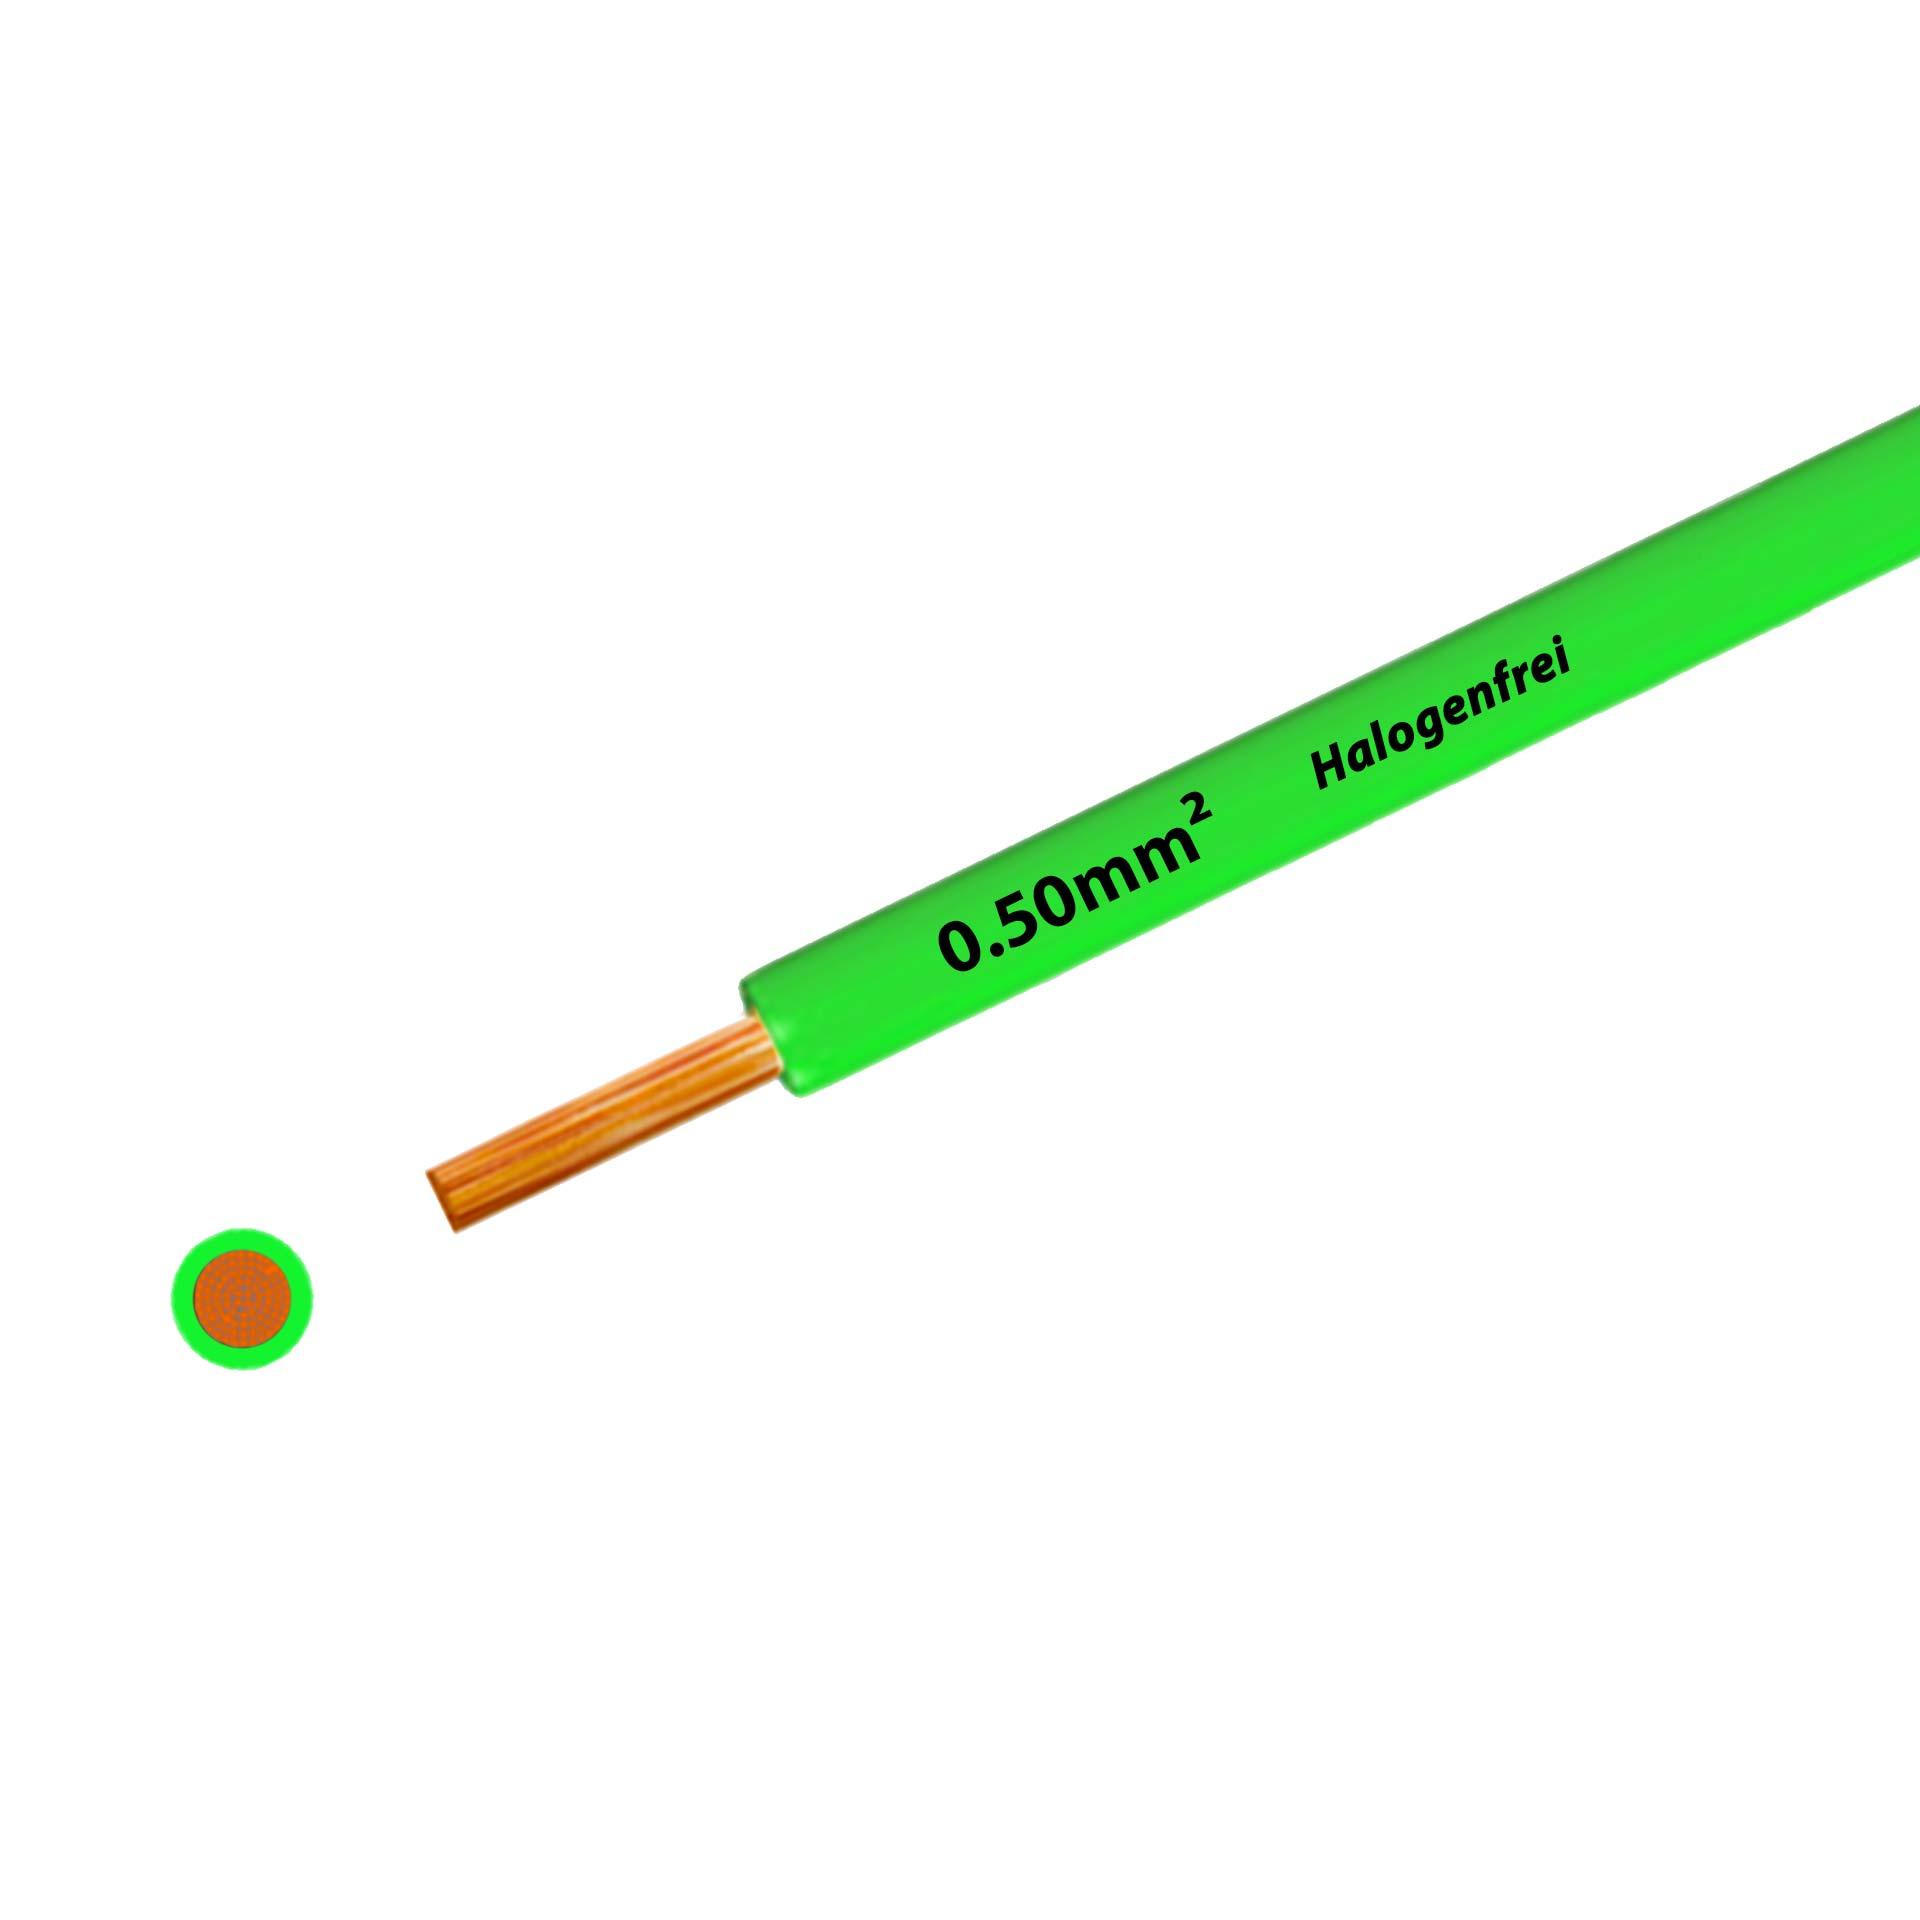 Litze halogenfrei 90° C , 500V, 0.50 mm2, grün (RAL 6018), auf Kunststoffrolle